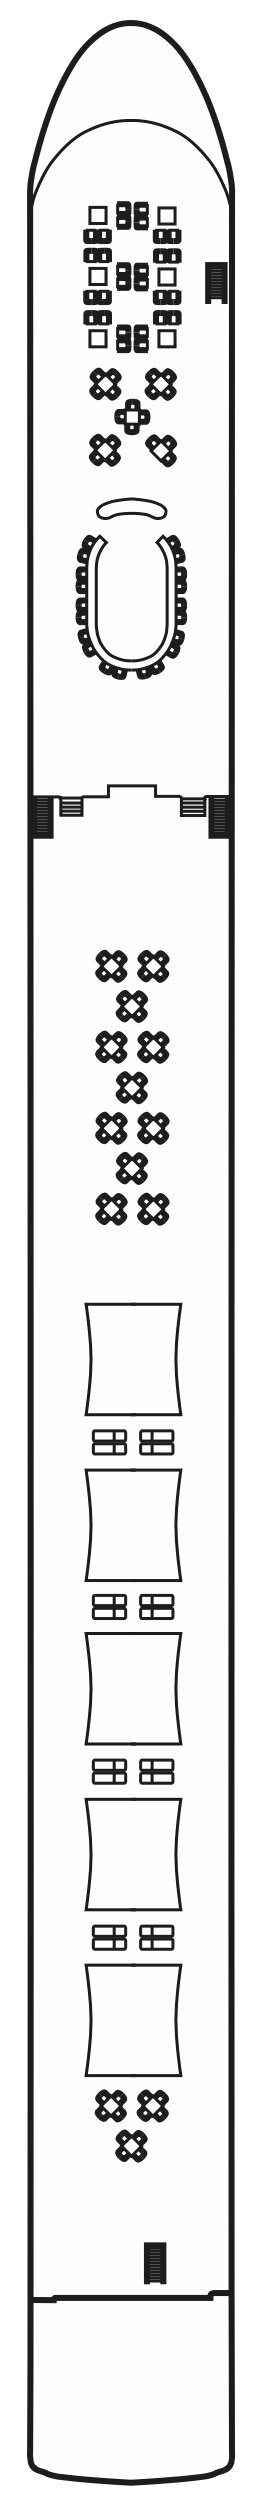 Sonnendeck (Deck Nr. 4)